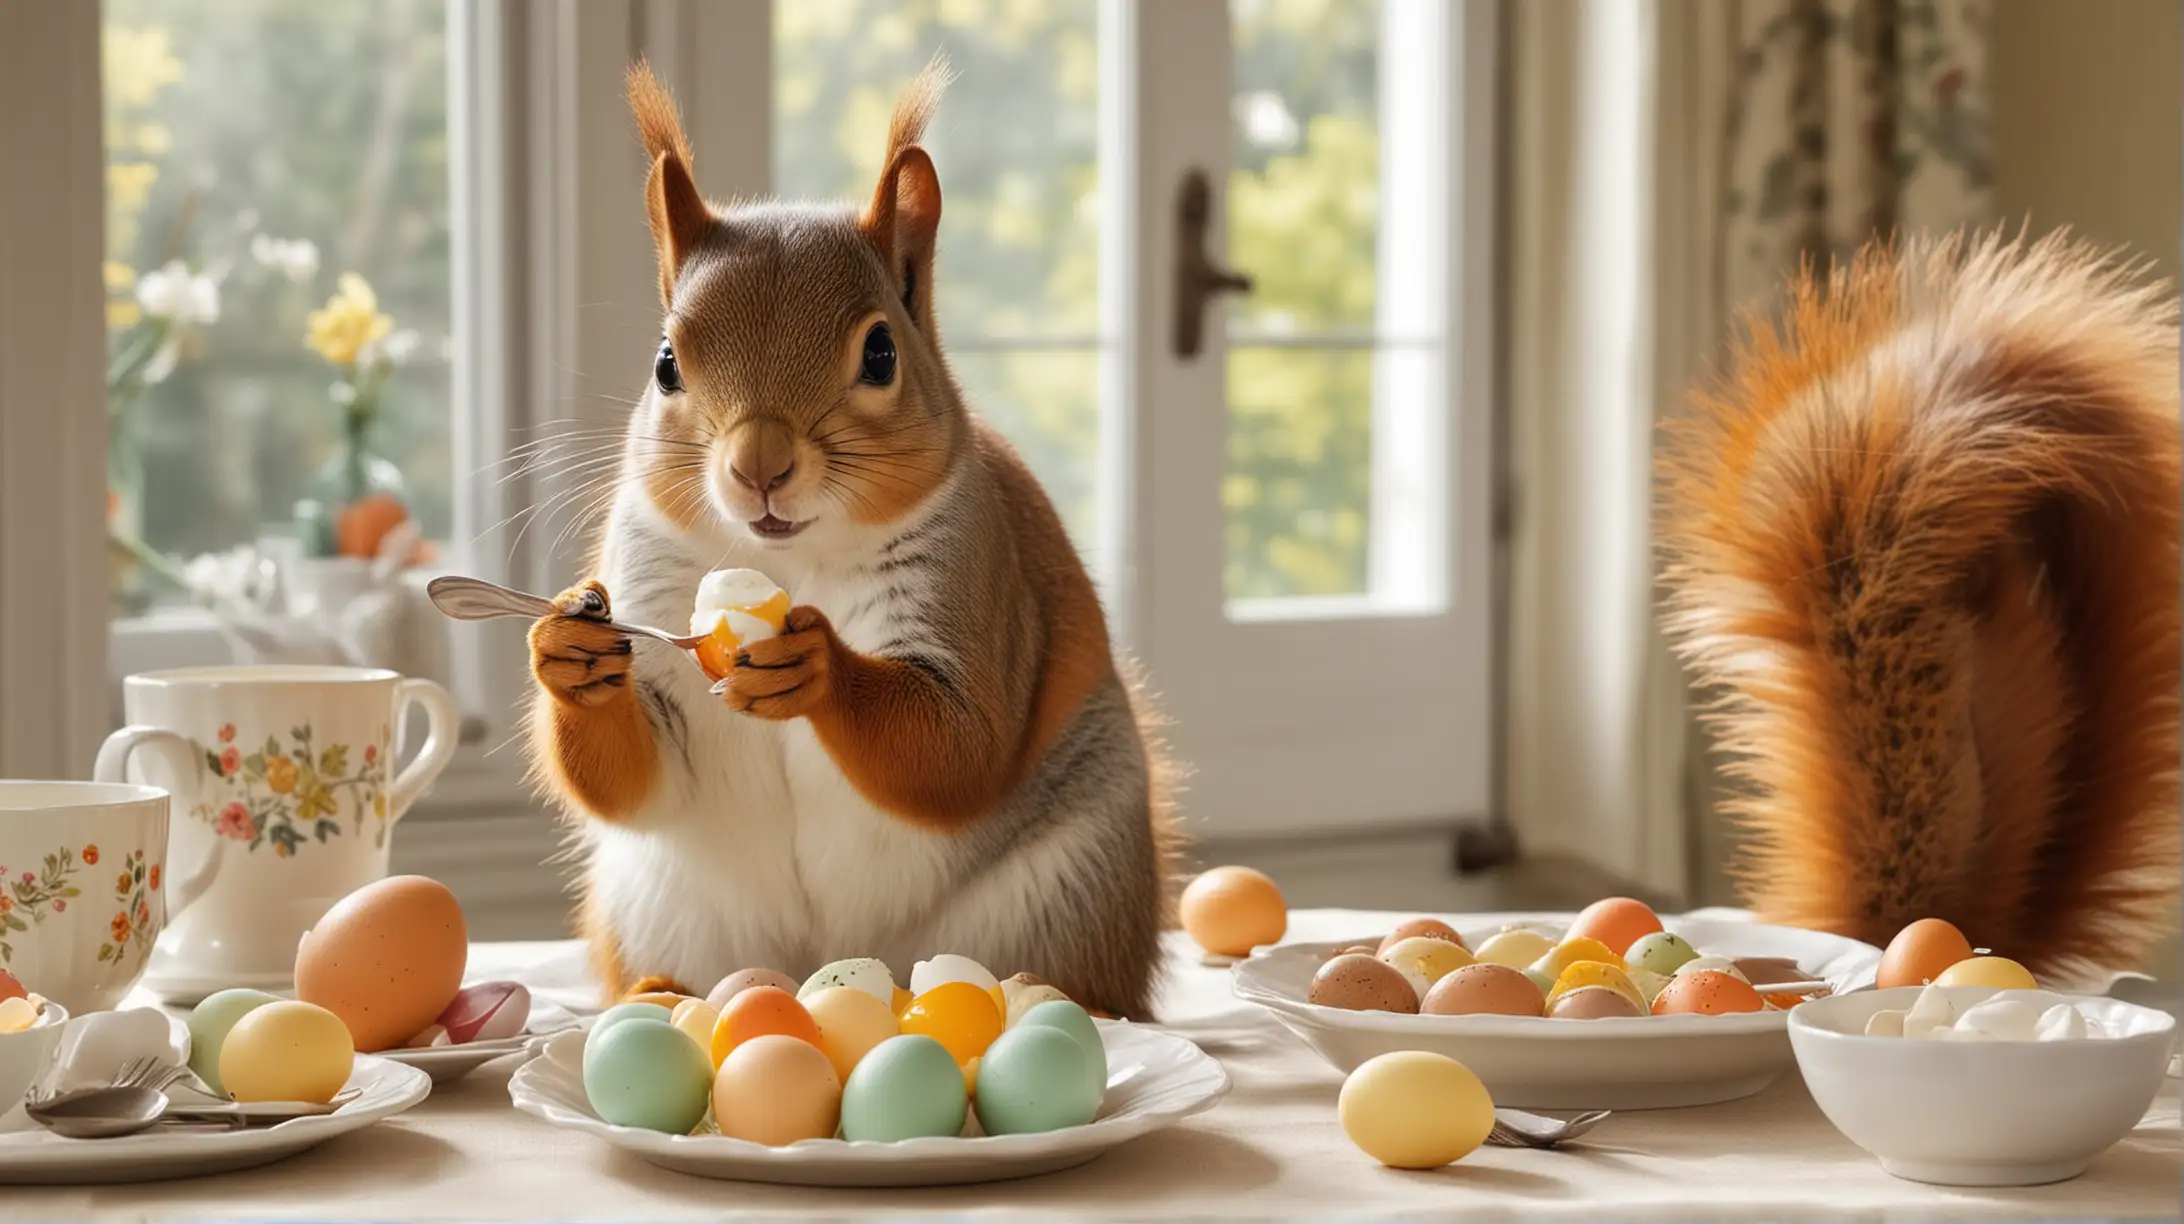 Ich hätte gerne ein buntes und witziges Bild von einem Eichhörnchen, das an einem Esstisch sitzt, einen Löffel in dem rechten Pfötchen hält und ein offenes, gekochtes Hühnerei isst. Da wir Ostern haben, sollte das Ei bunt gefärbt sein und der Tisch sollte österlich dekoriert sein. Ganz wichtig, die Schale der Eier sollte gefärbt sein.